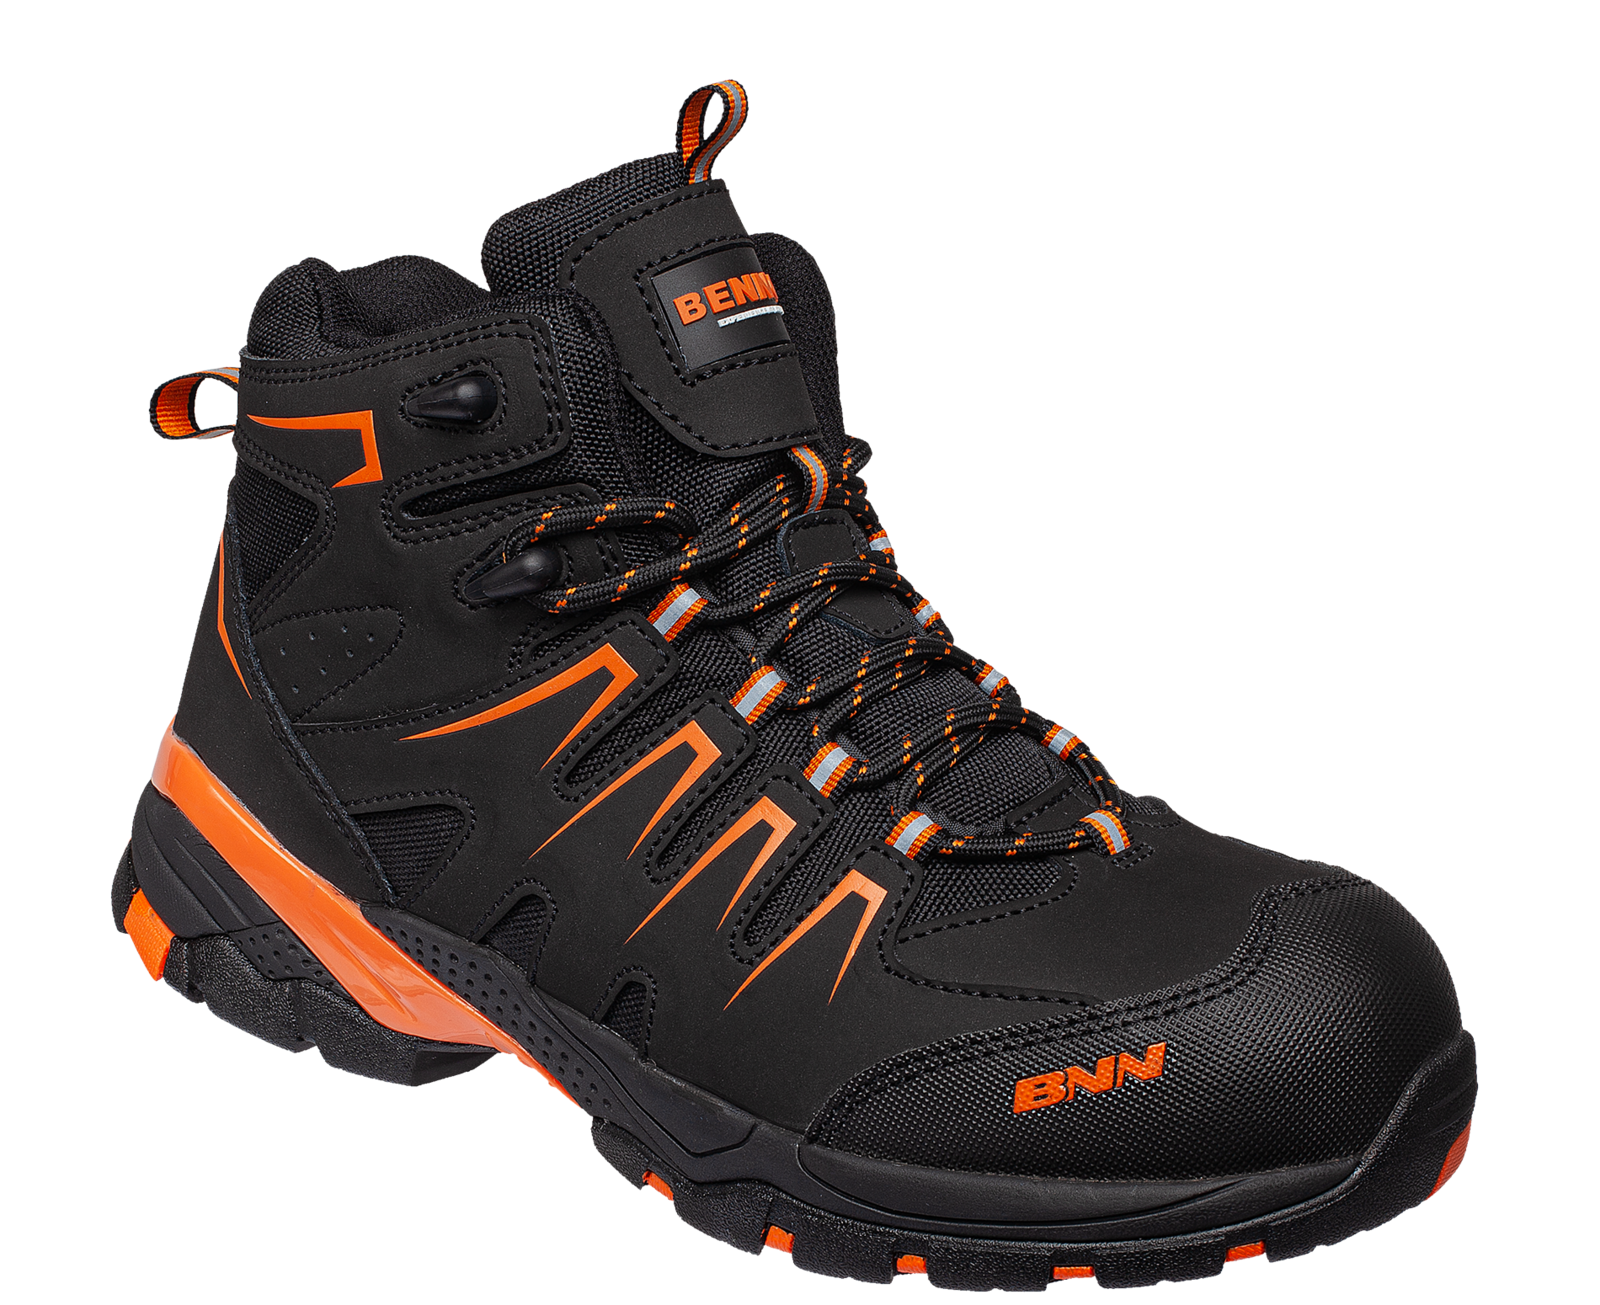 Bezpečnostná členková obuv Bennon Orlando XTR S3 NM High - veľkosť: 41, farba: čierna/oranžová